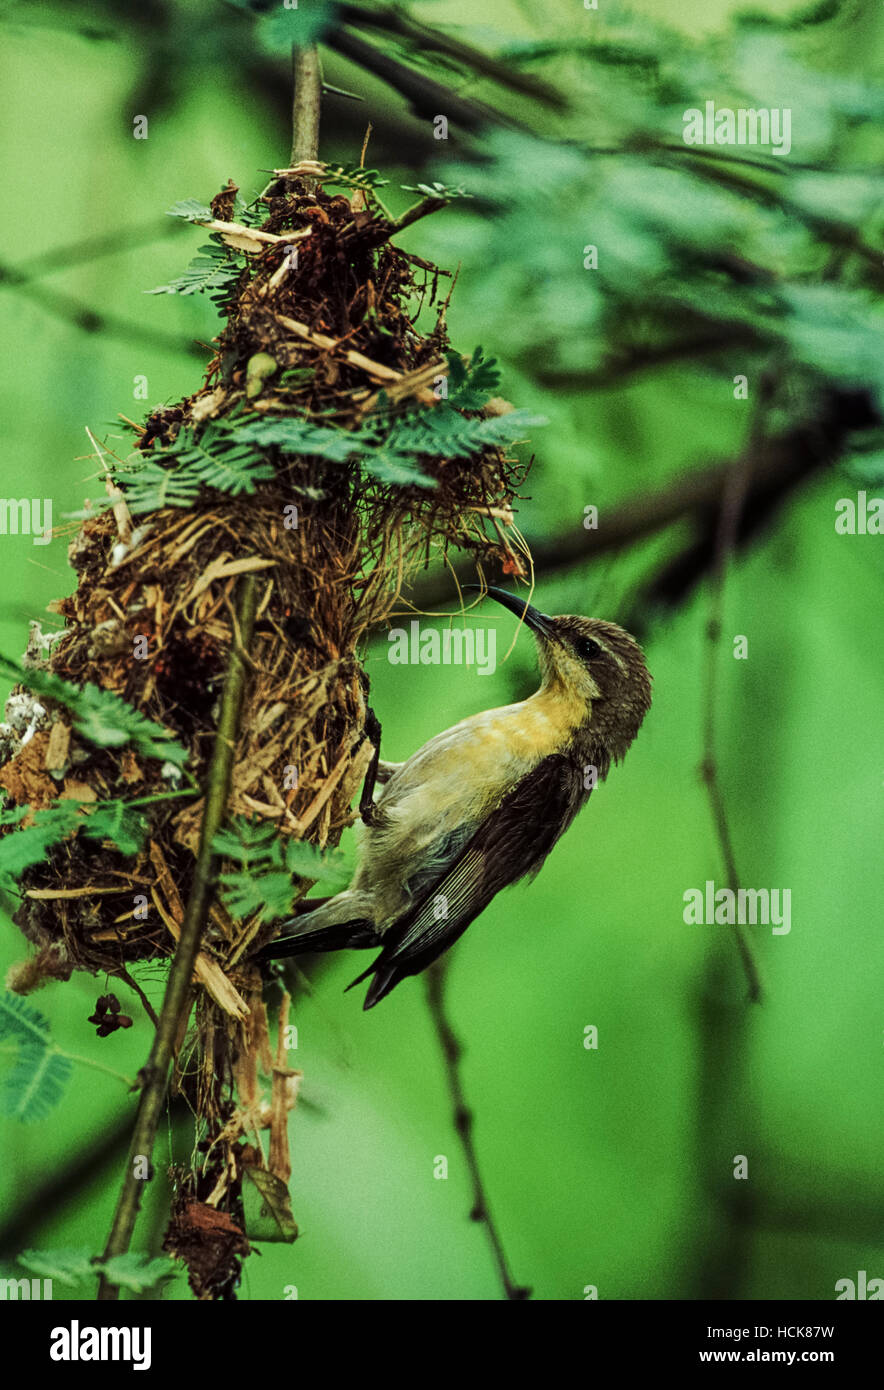 Purple Sunbird, Nectarina asiatica or Cinnyris asiaticus, female building its nest, Rajasthan, India Stock Photo